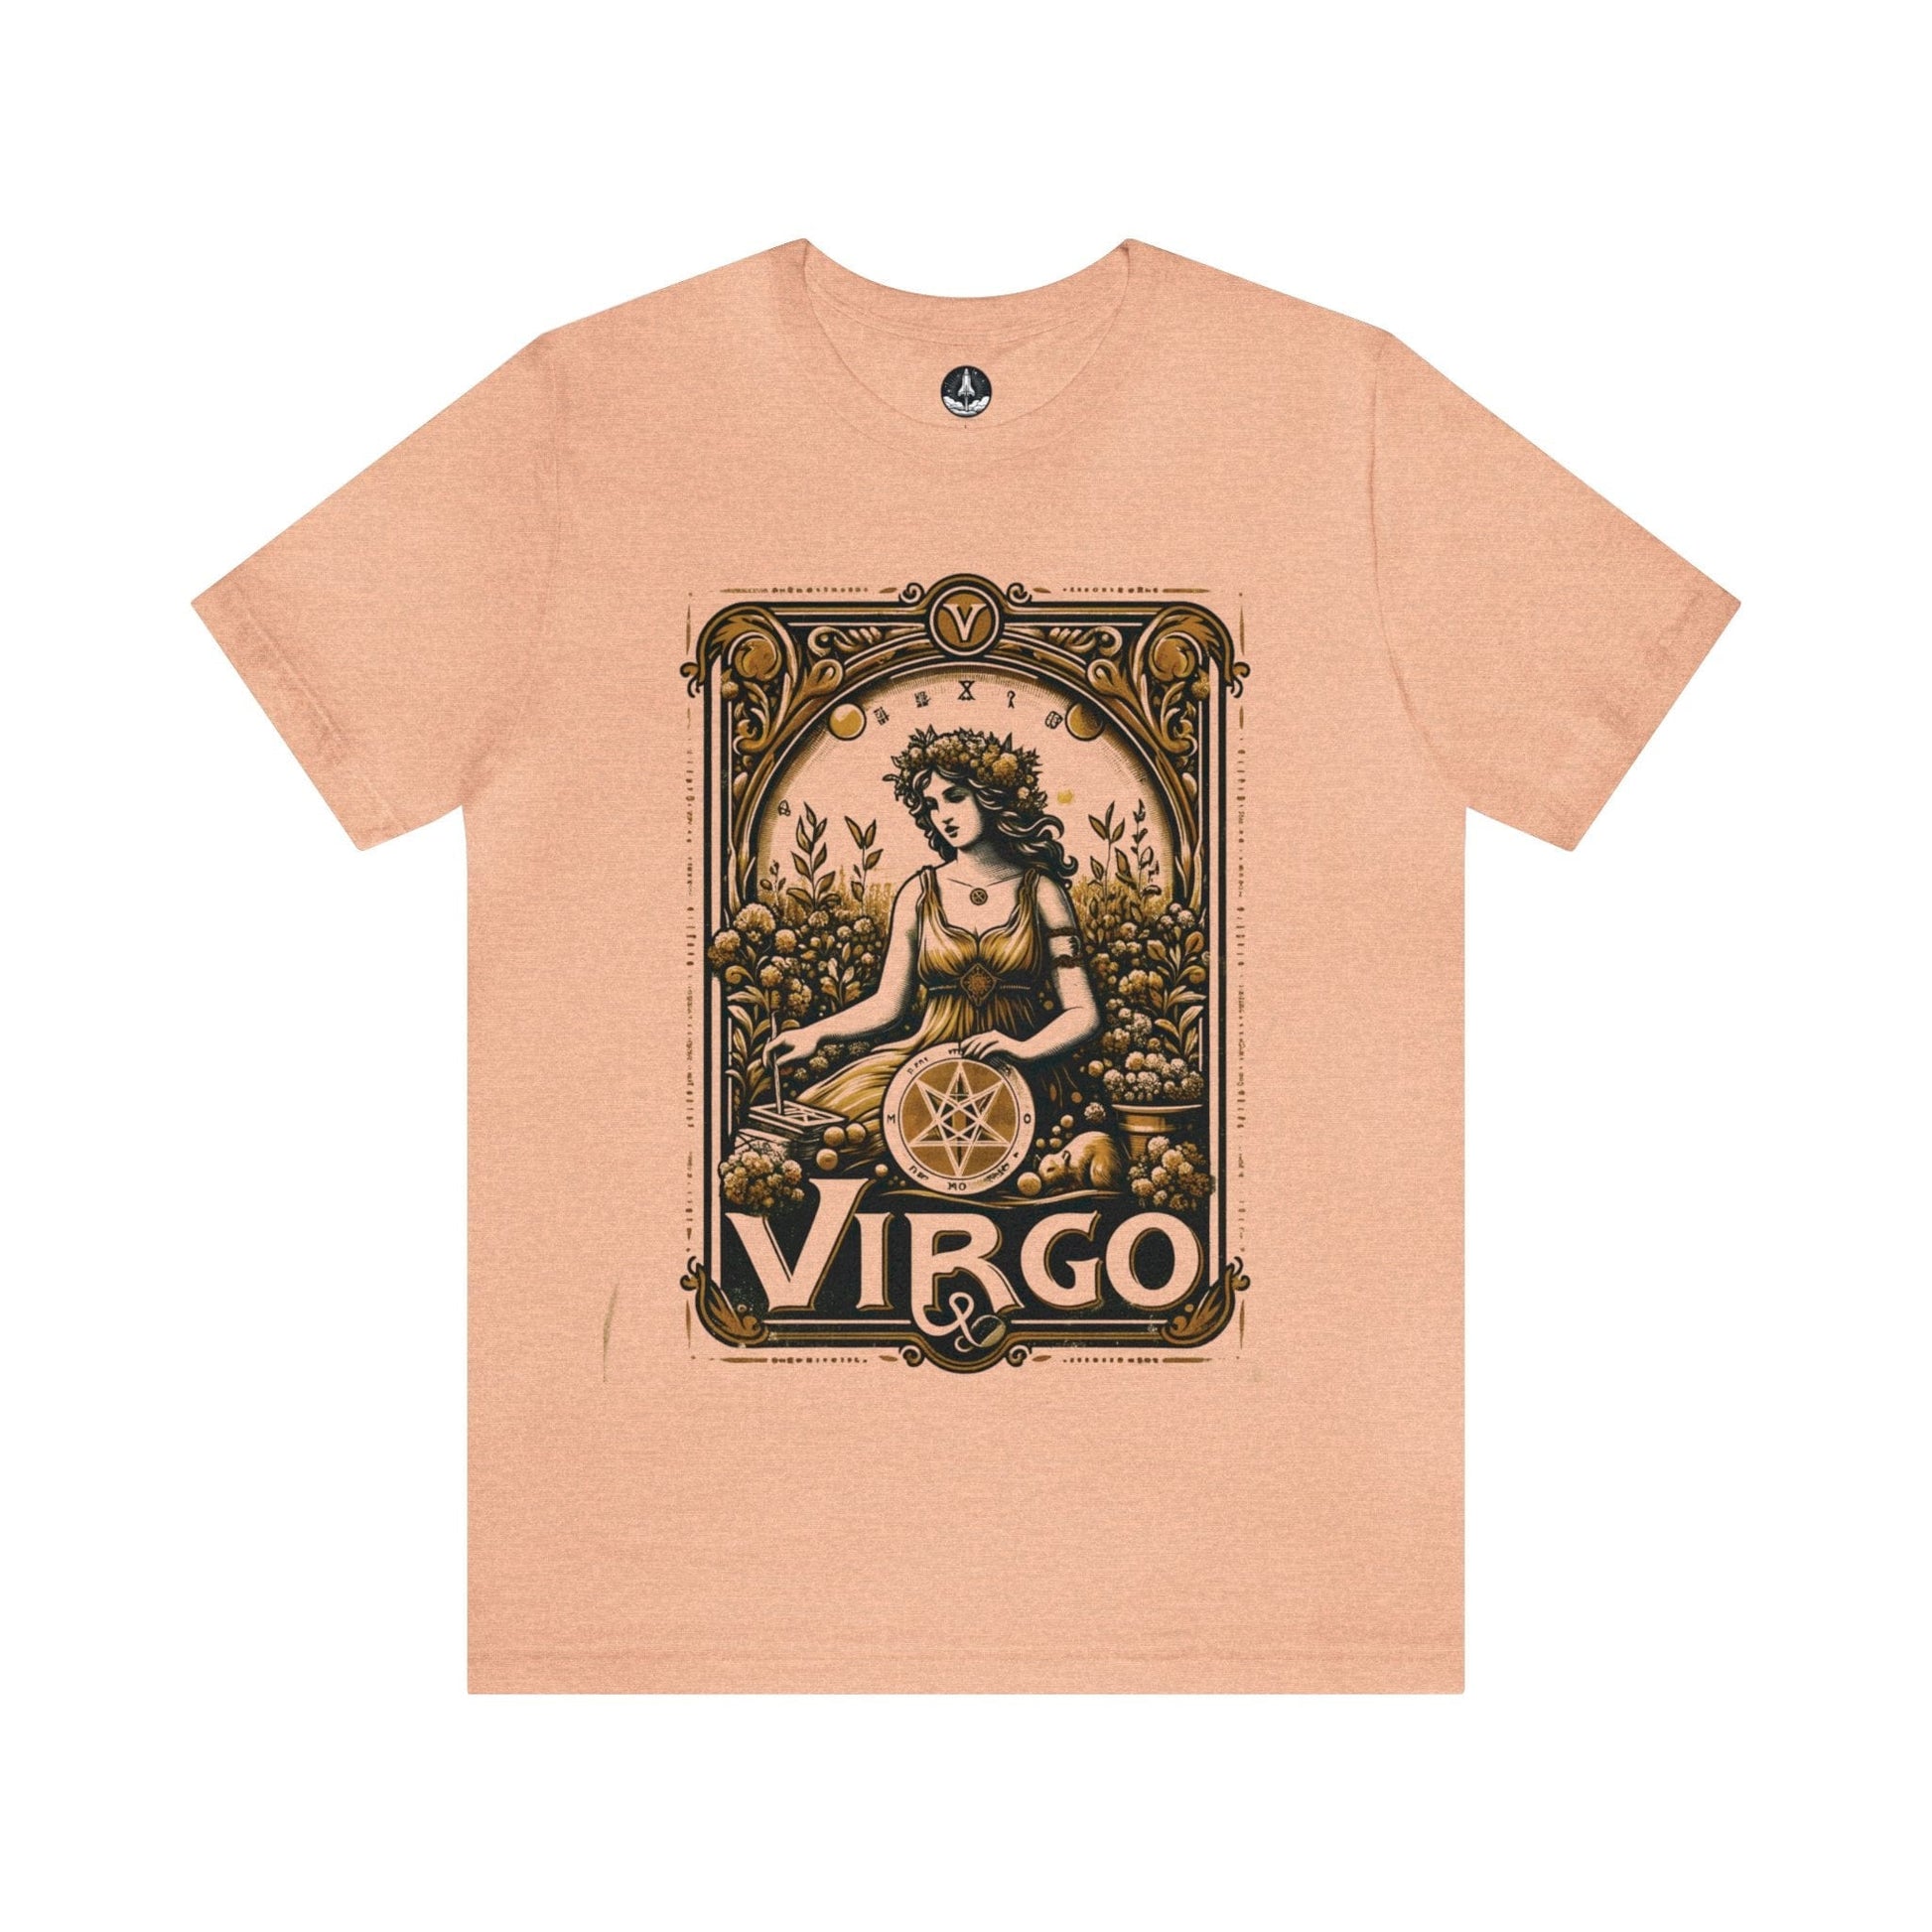 T-Shirt Heather Peach / S Maiden of Pentacles: Virgo T-Shirt